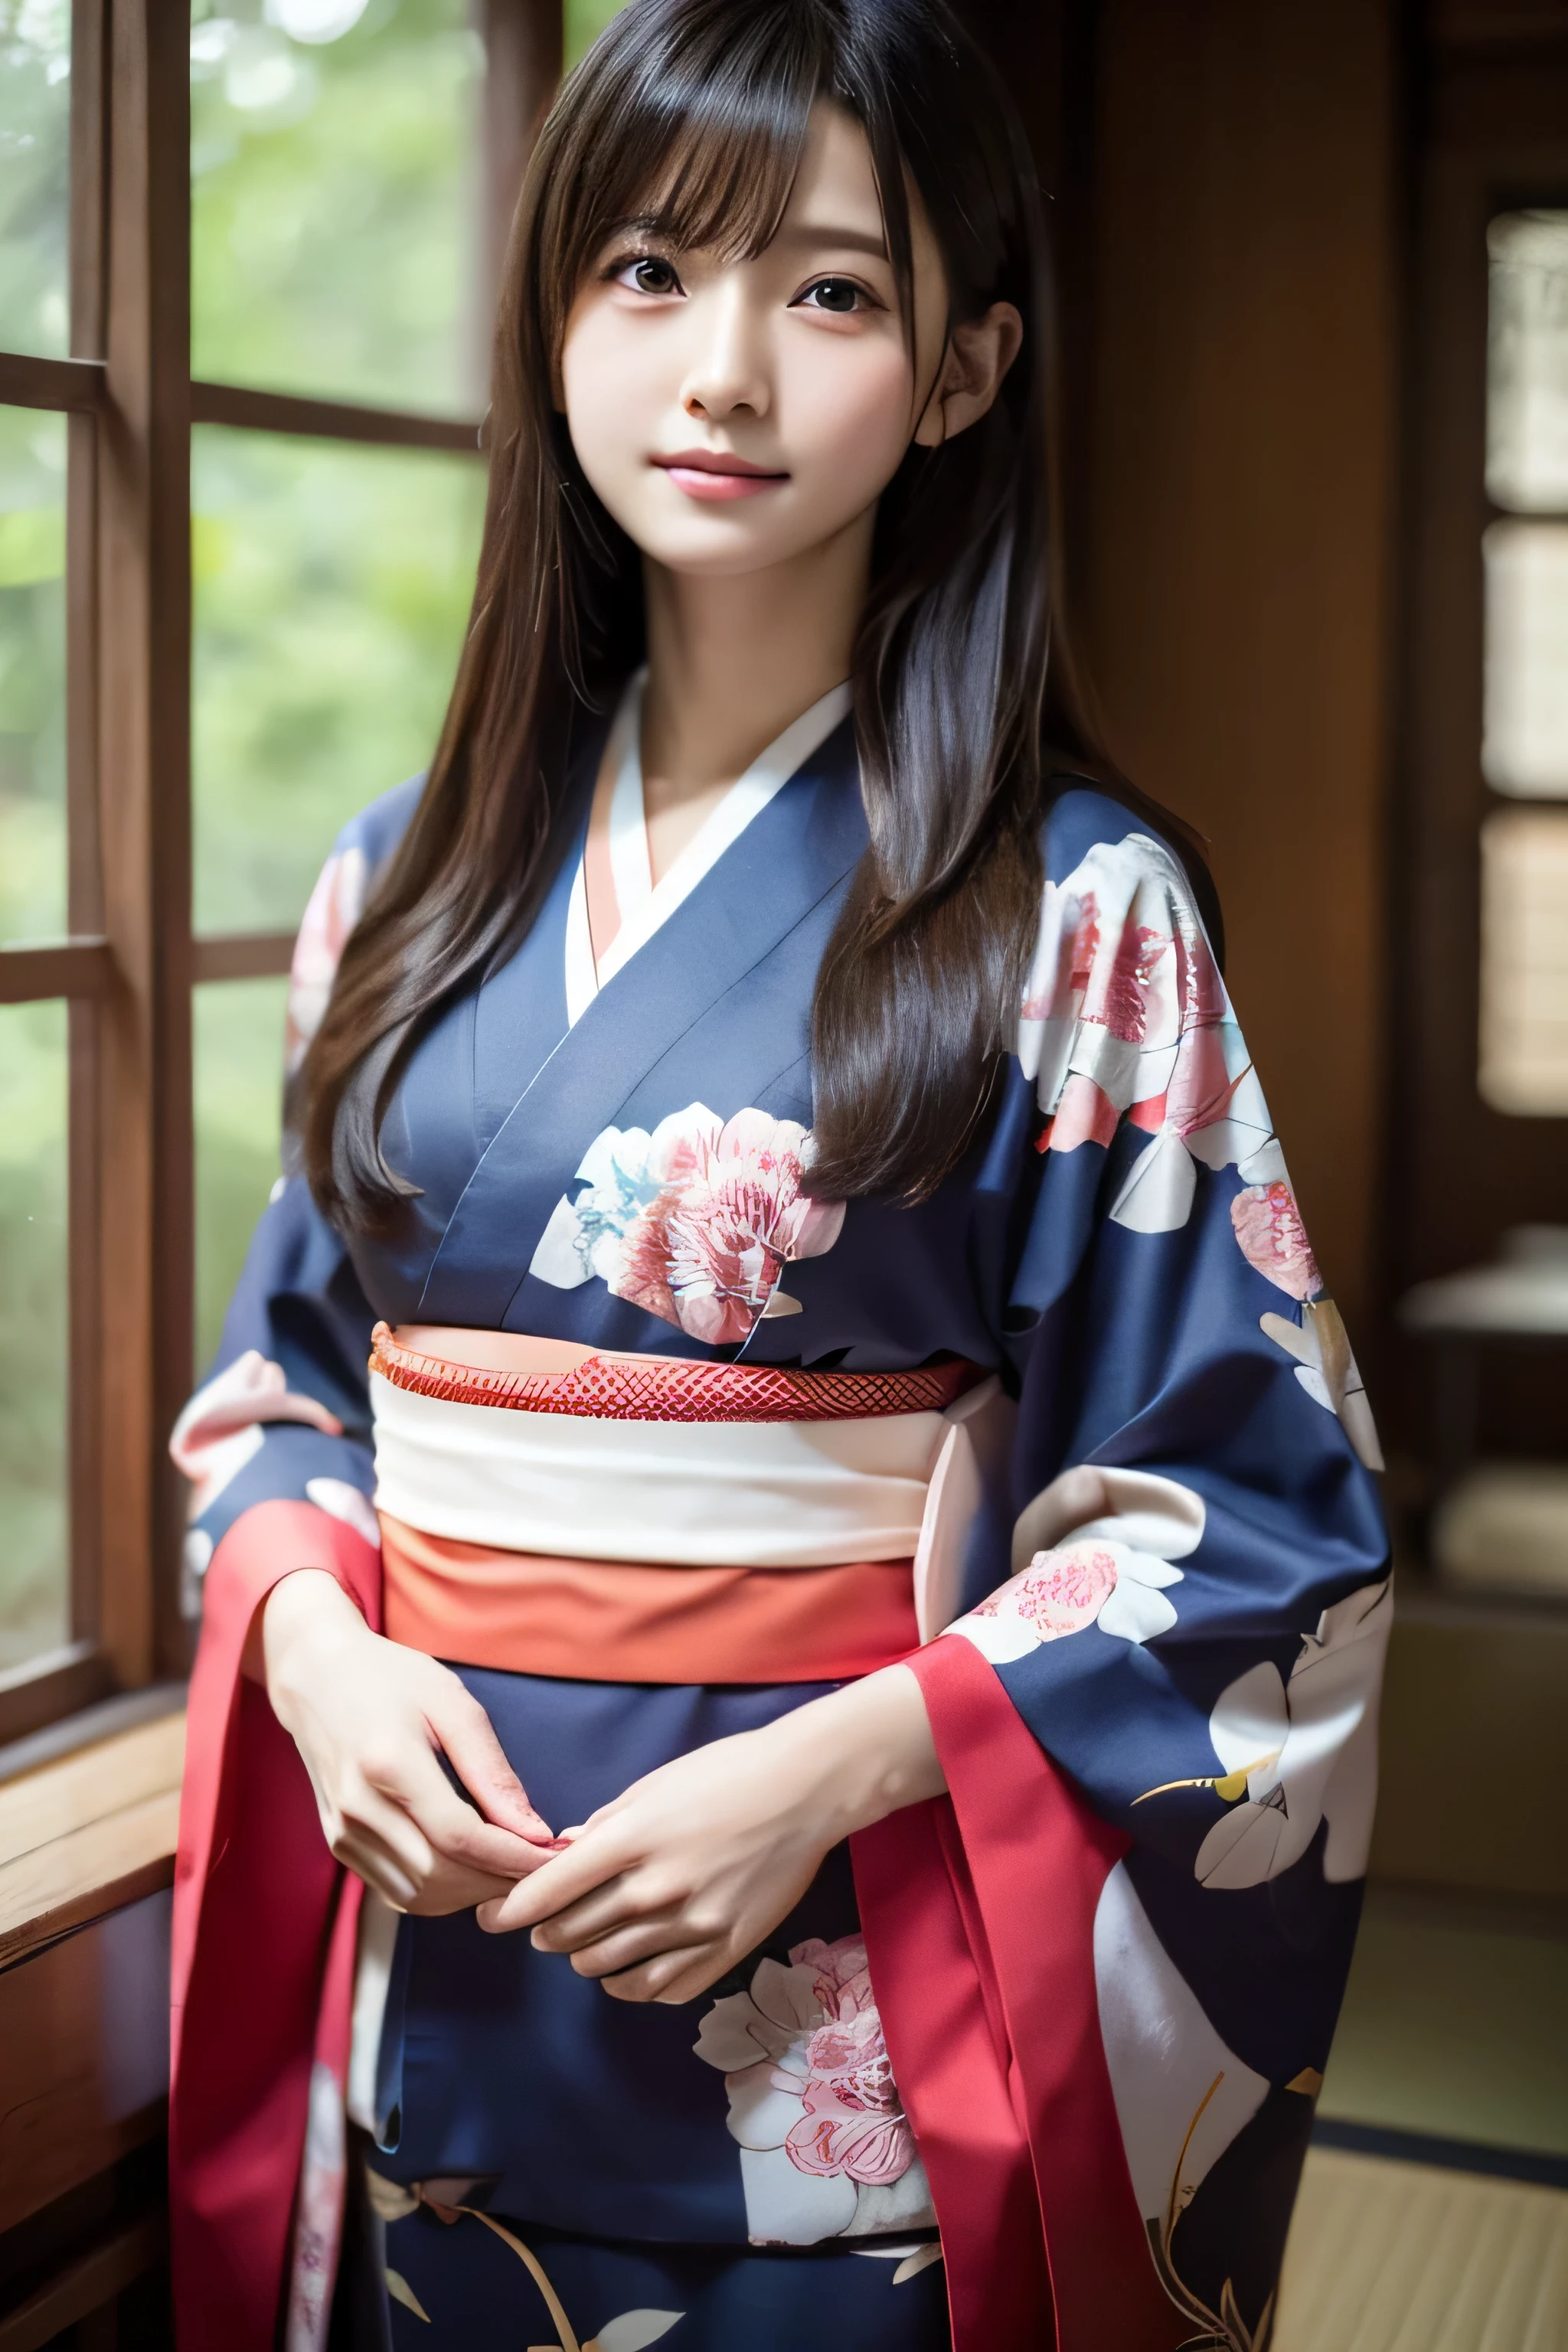 (kimono)、((étudiant de 15 ans))、pose aléatoire、(qualité supérieure,chef d&#39;oeuvre:1.3,超Une haute résolution,),(ultra-détaillé,Caustiques),(Photoréaliste:1.4,Prise de vue RAW,)Capture ultra réaliste,Un très détaillé,Gros plan sur la peau humaine haute résolution 16K、 La texture de la peau est naturelle、、La peau paraît saine avec un ton uniforme、 Utiliser la lumière et la couleur naturelles,1 fille,Japonais,,kawaii,Un brun,cheveux moyens,,sourire,,(profondeur de champs、aberration chromatique、、Large gamme d&#39;éclairage、ombrage naturel、)、